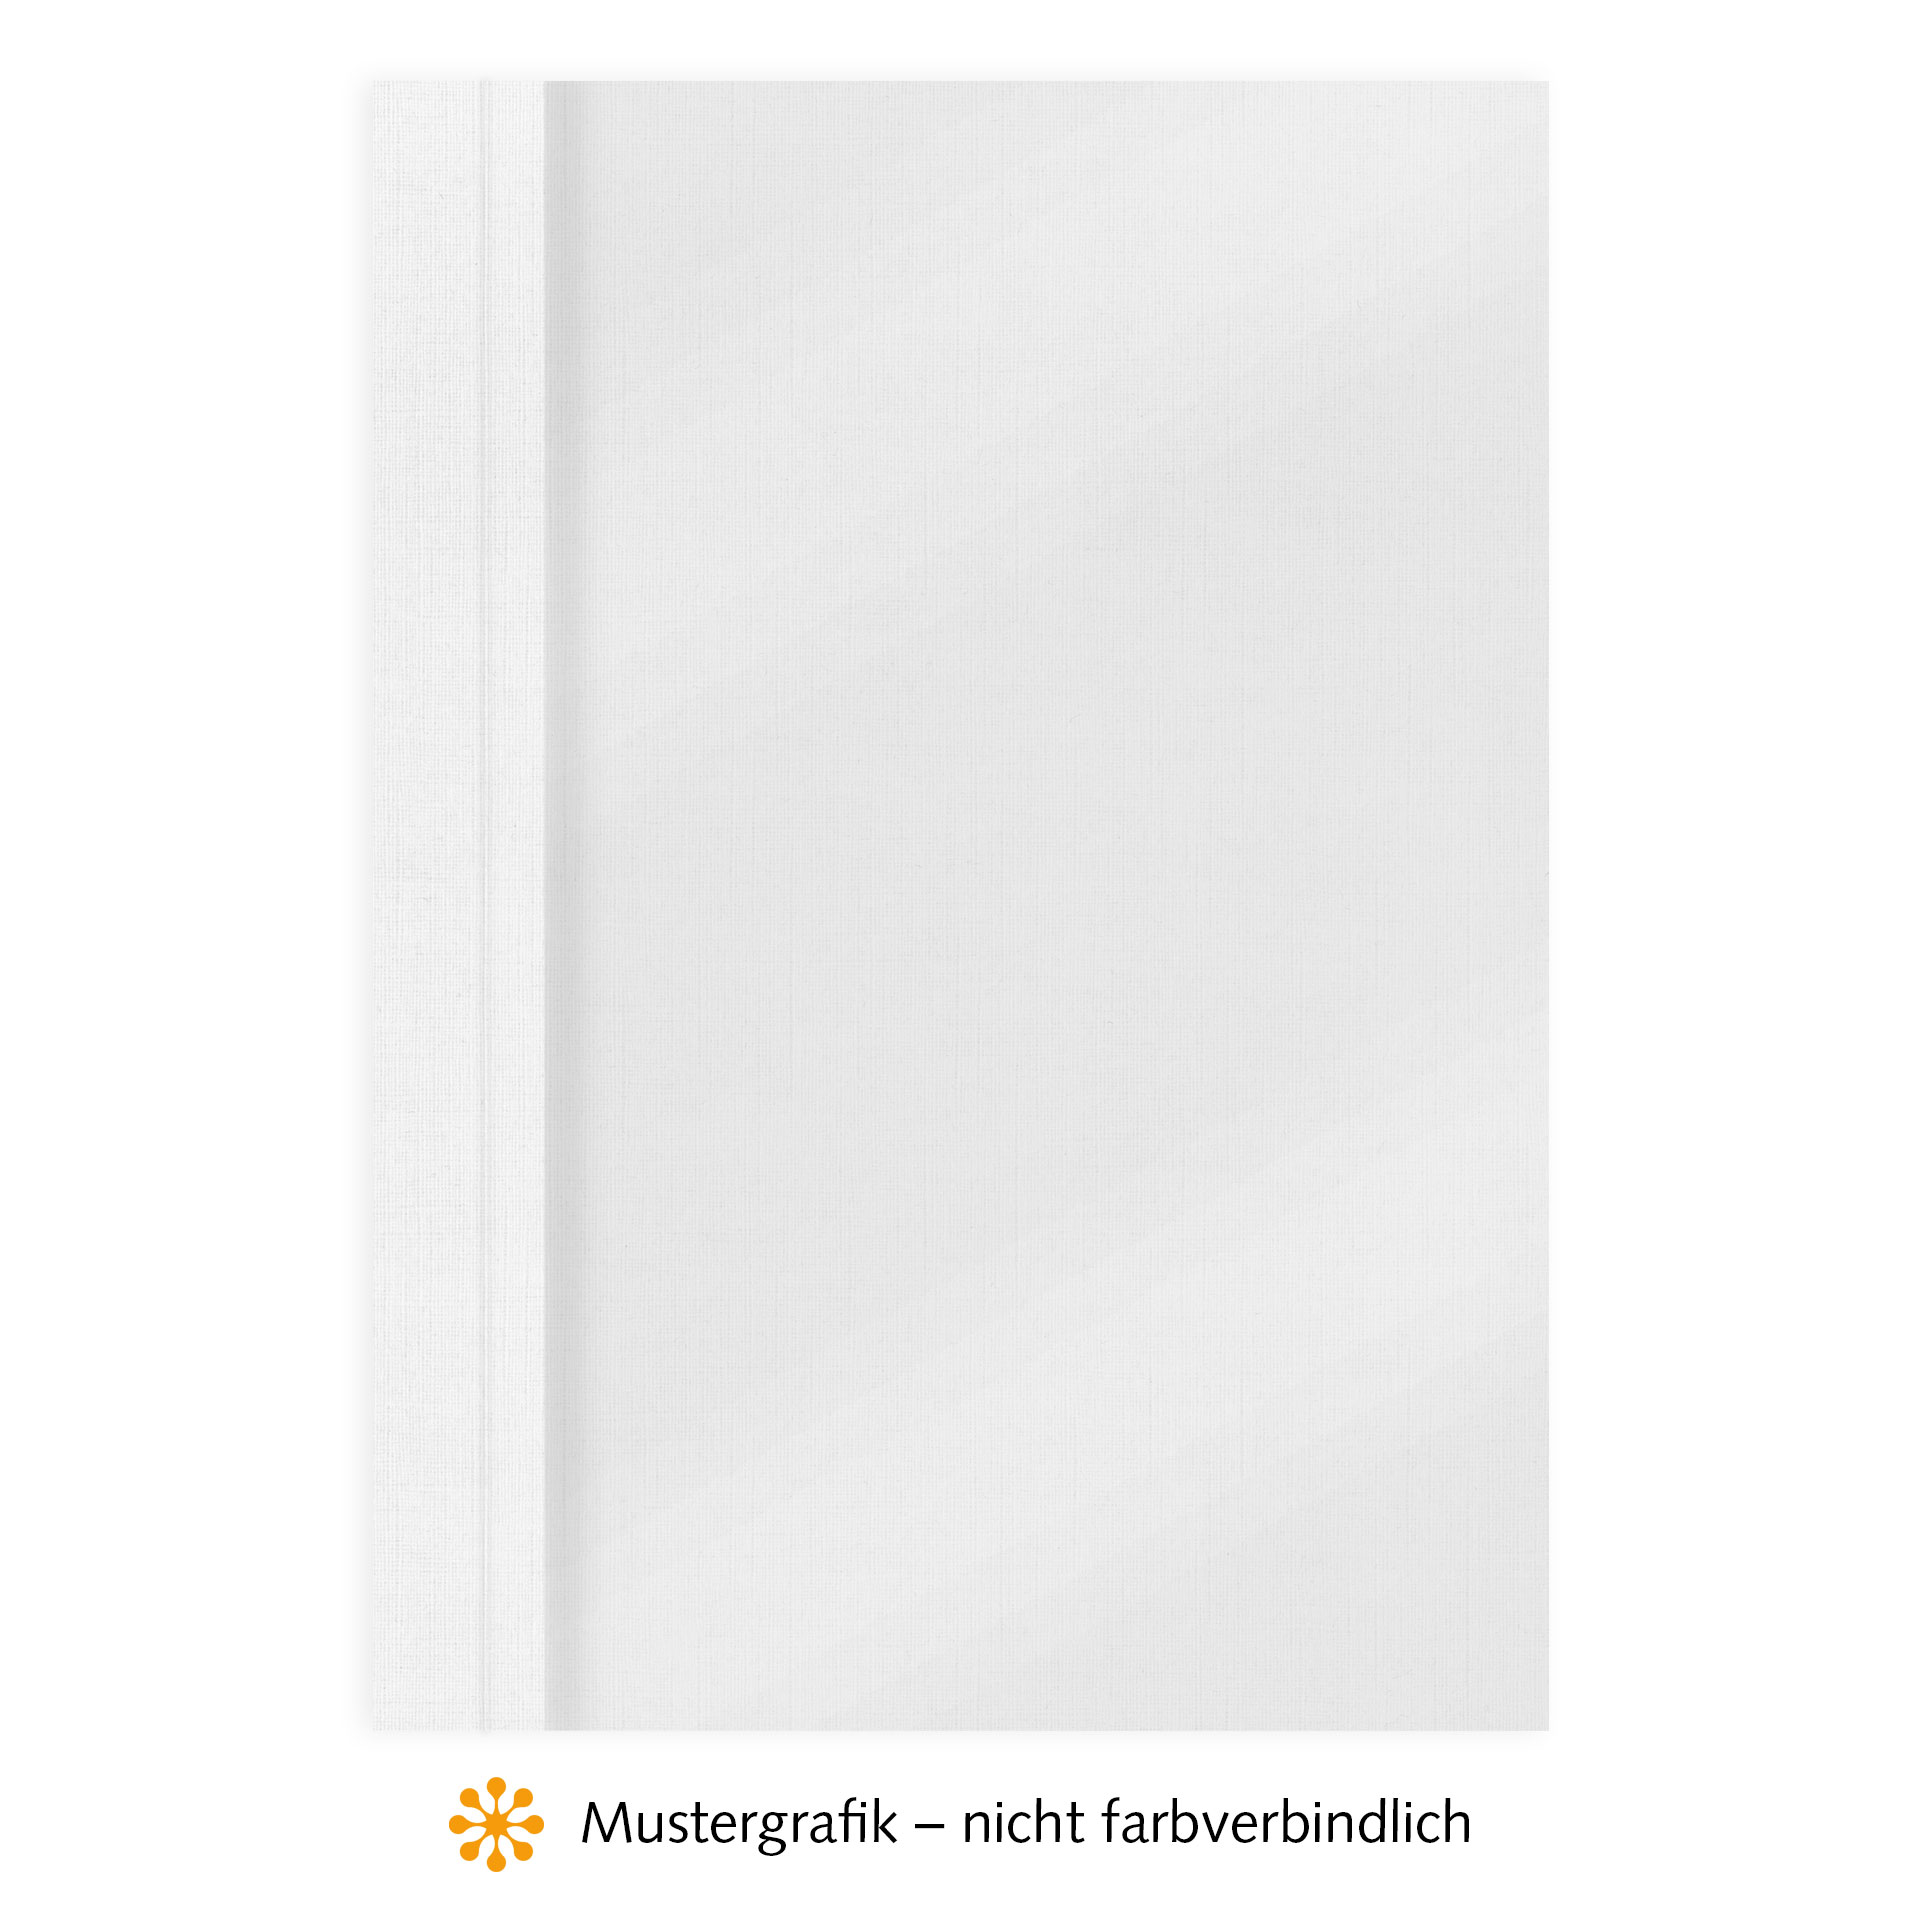 Ösenmappen DUO Cover, Vorderseite Folie MATT transparent, Rückseite Karton Leinen, Weiß, 1 mm, 1 bis 10 Blatt